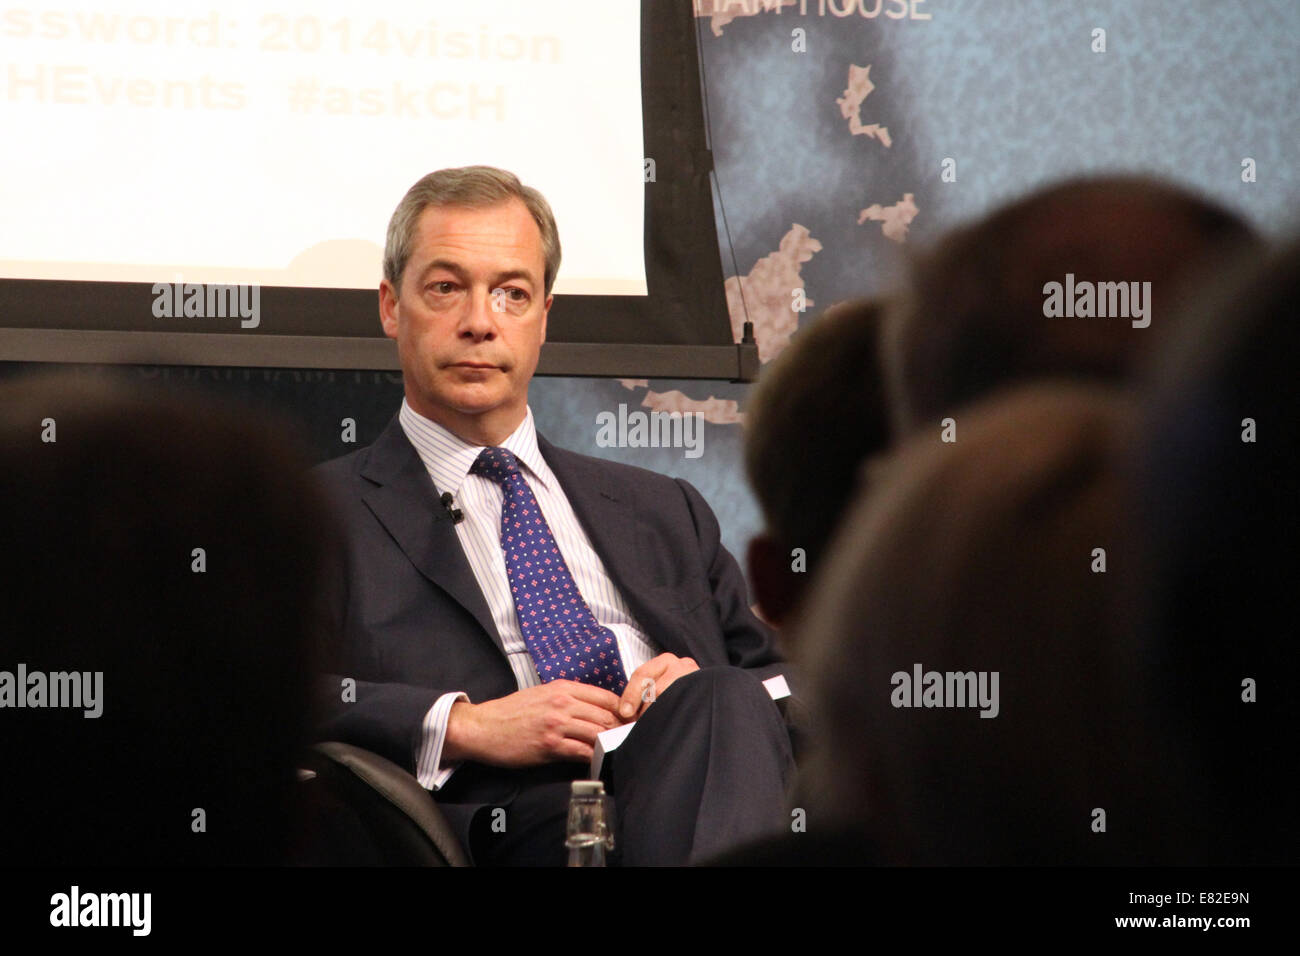 Nigel Farage, chef du Parti pour l'indépendance du Royaume-Uni, parlant à Chatham House à Londres le lundi 31 mars 2014. Banque D'Images